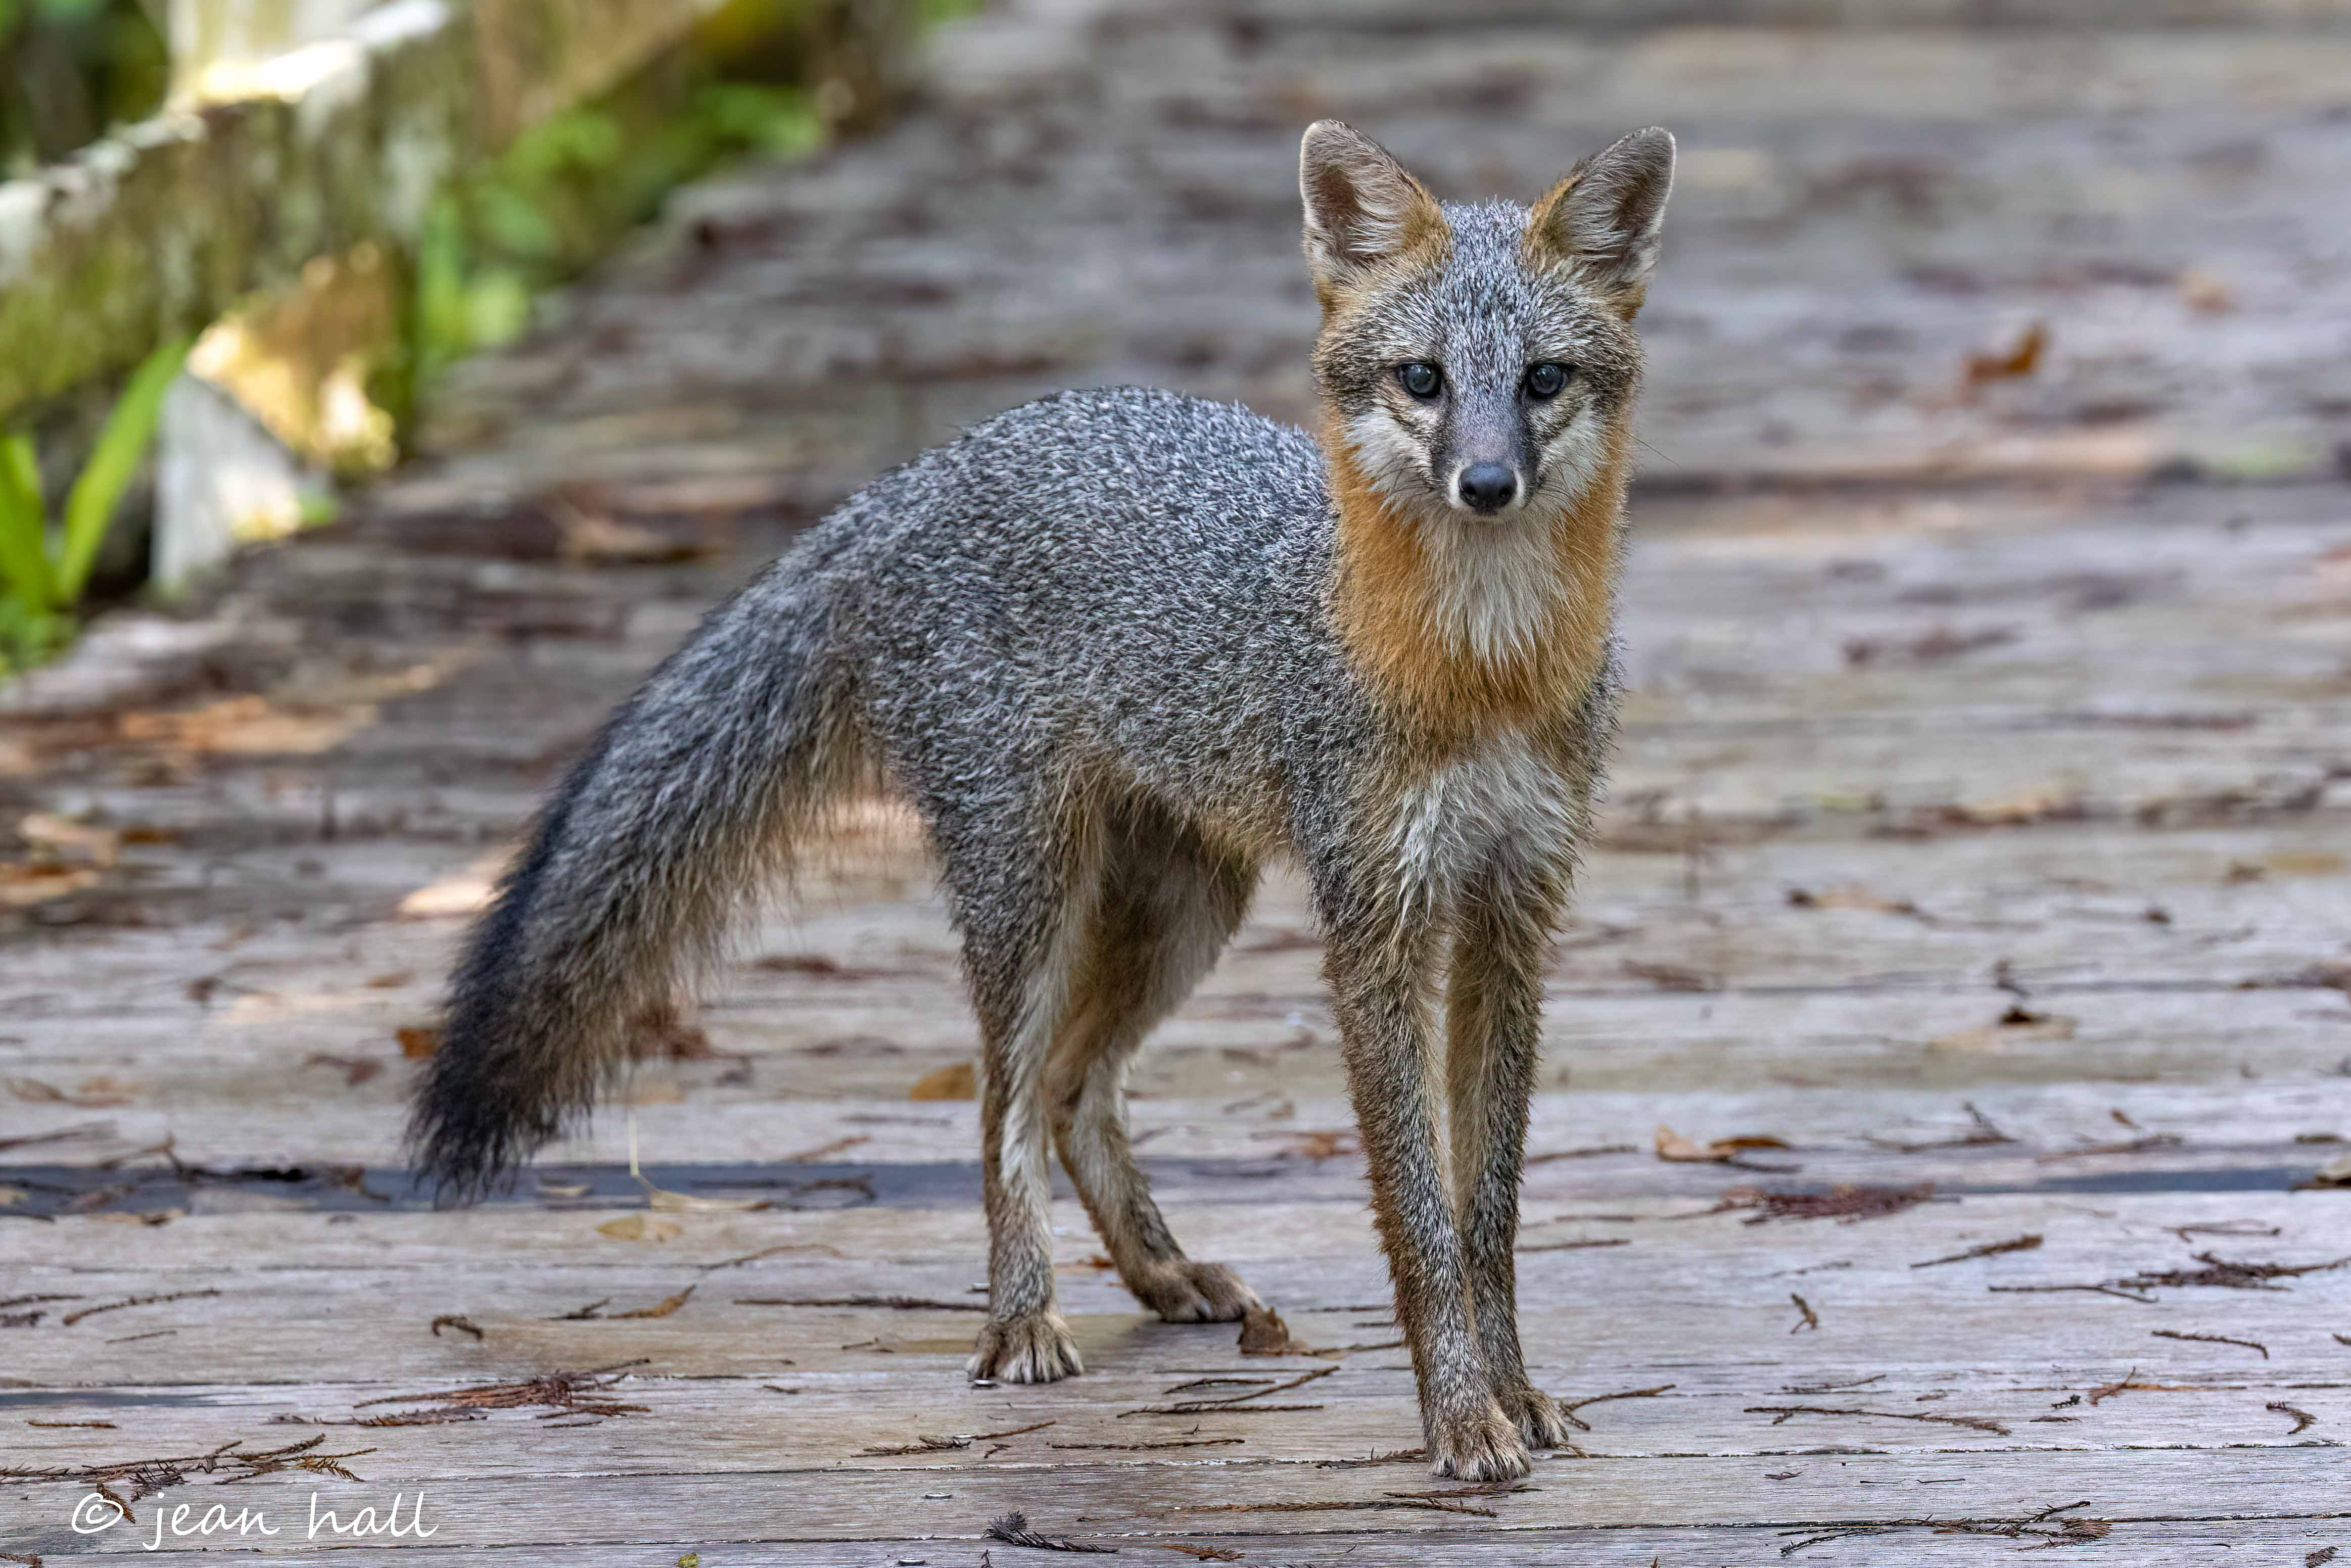 A fox on a boardwalk